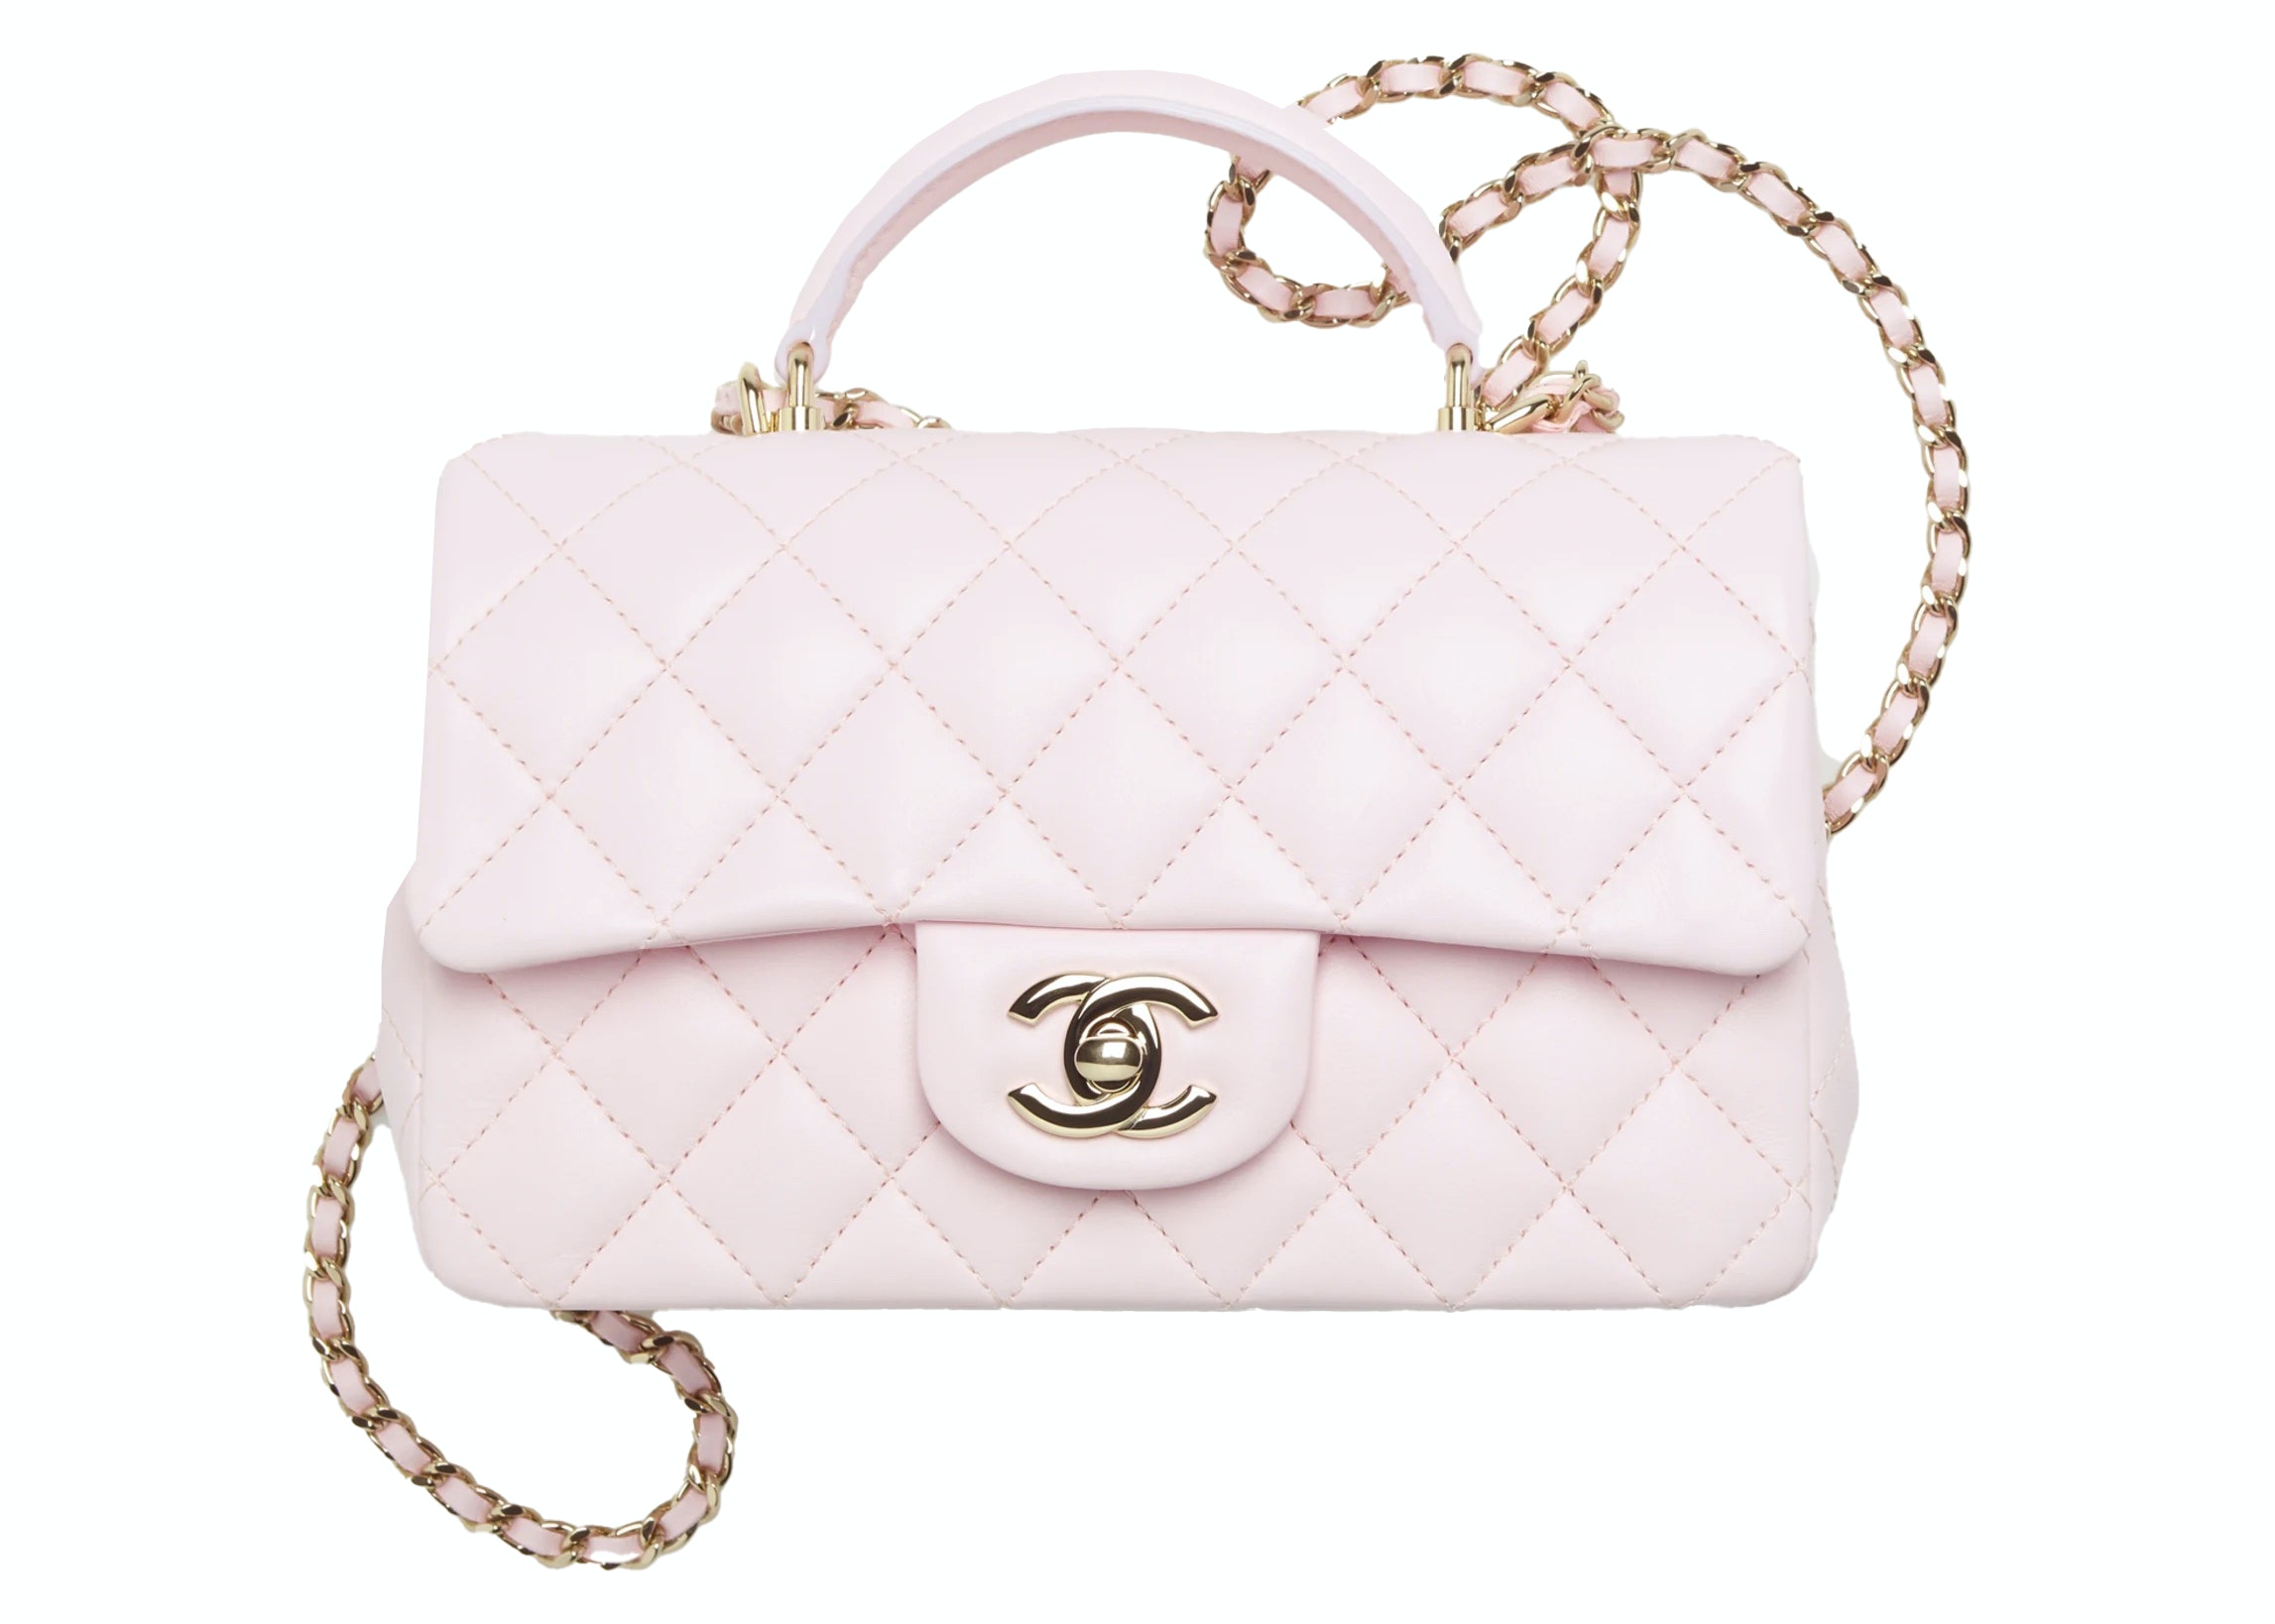 Chanel Mini Flap Bag With Top Handle  Nice Bag